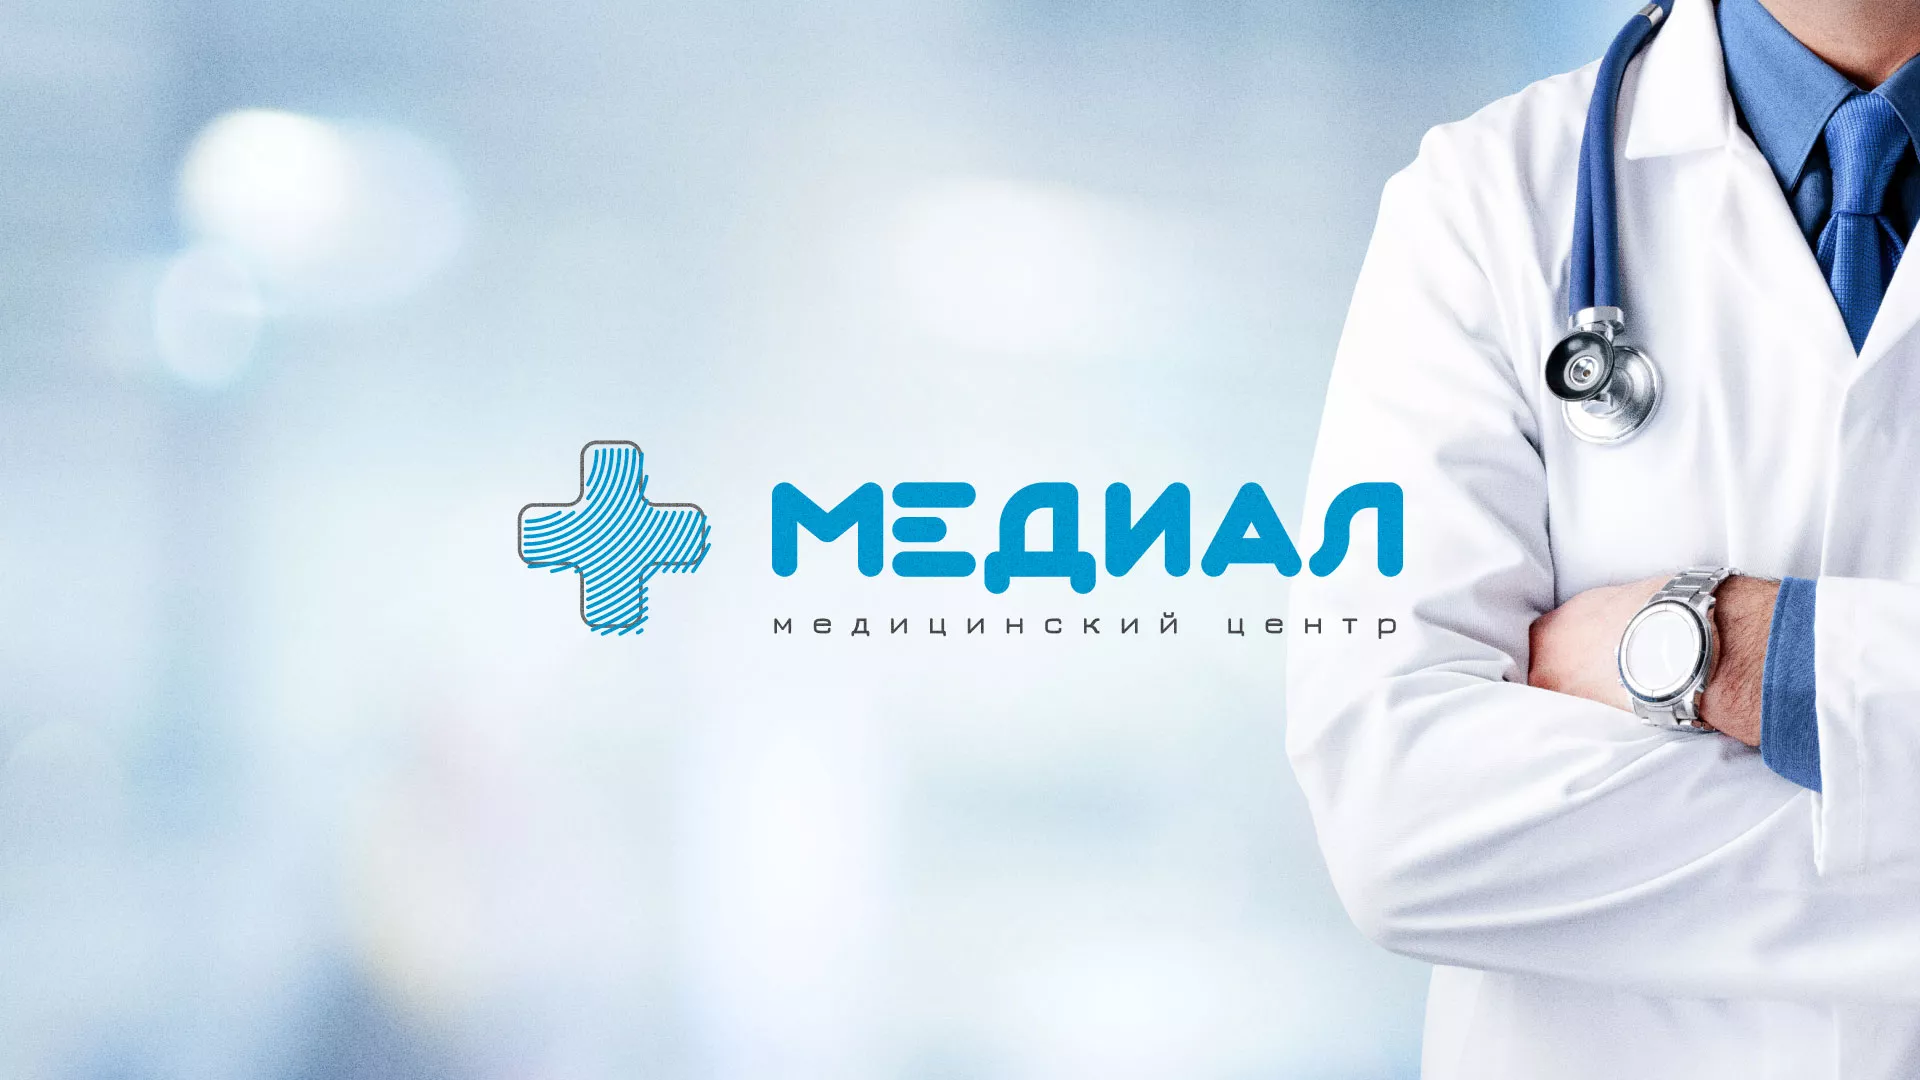 Создание сайта для медицинского центра «Медиал» в Вёшках